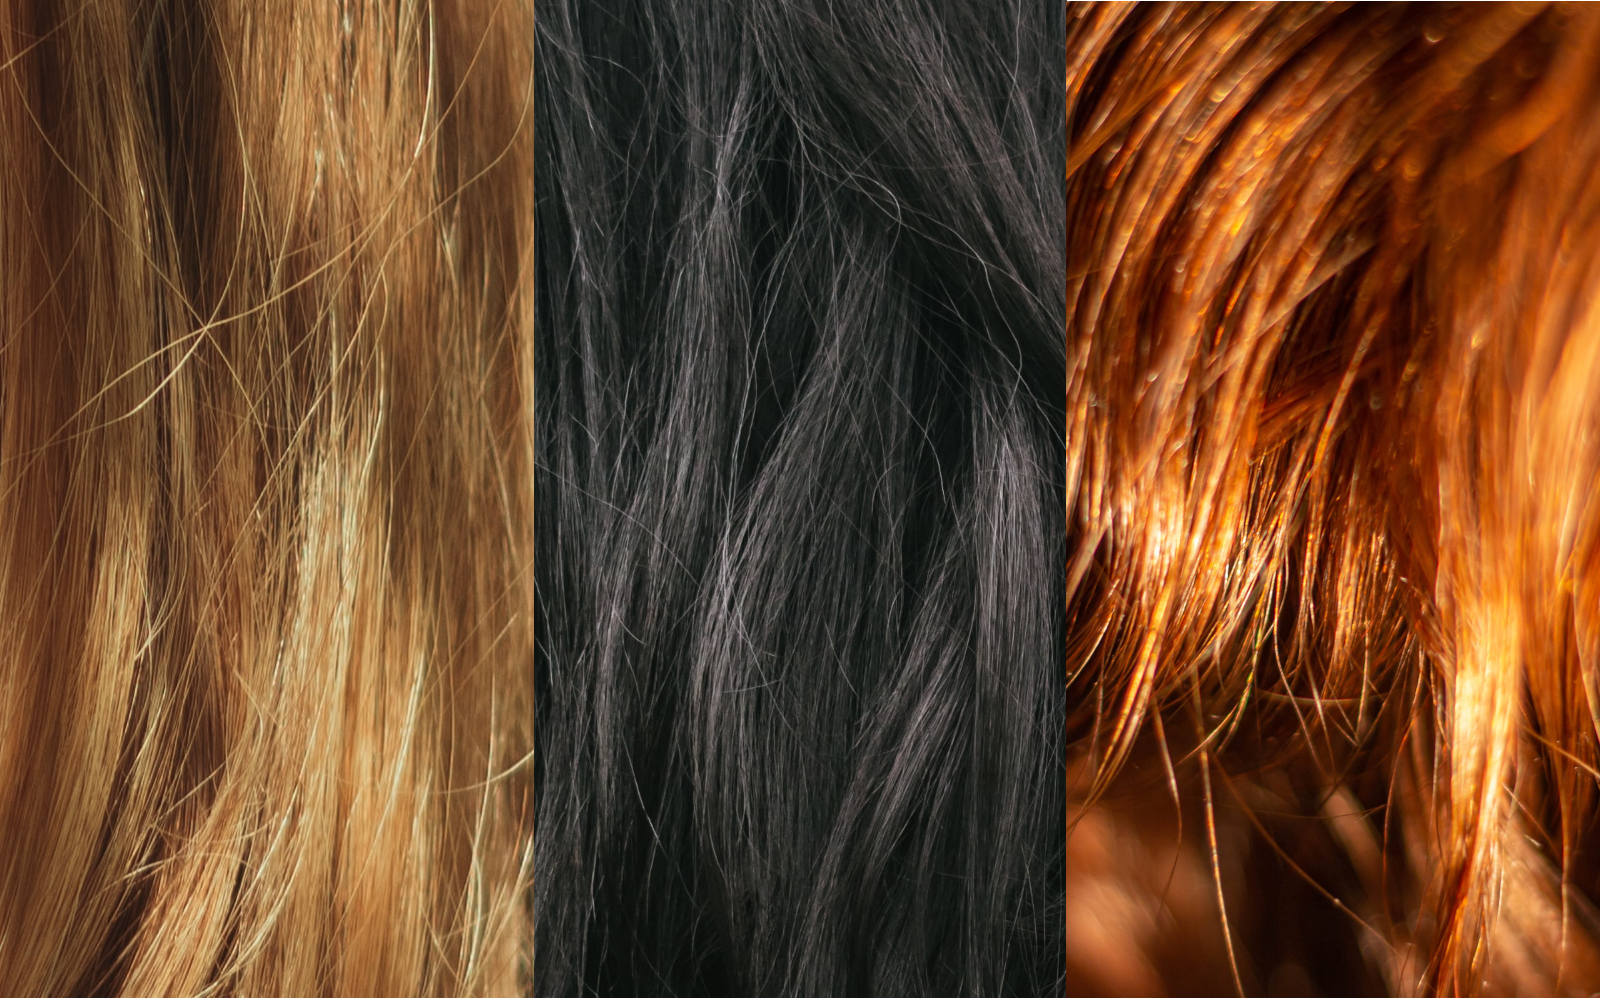 Scegliere il colore di capelli giusto: la guida completa